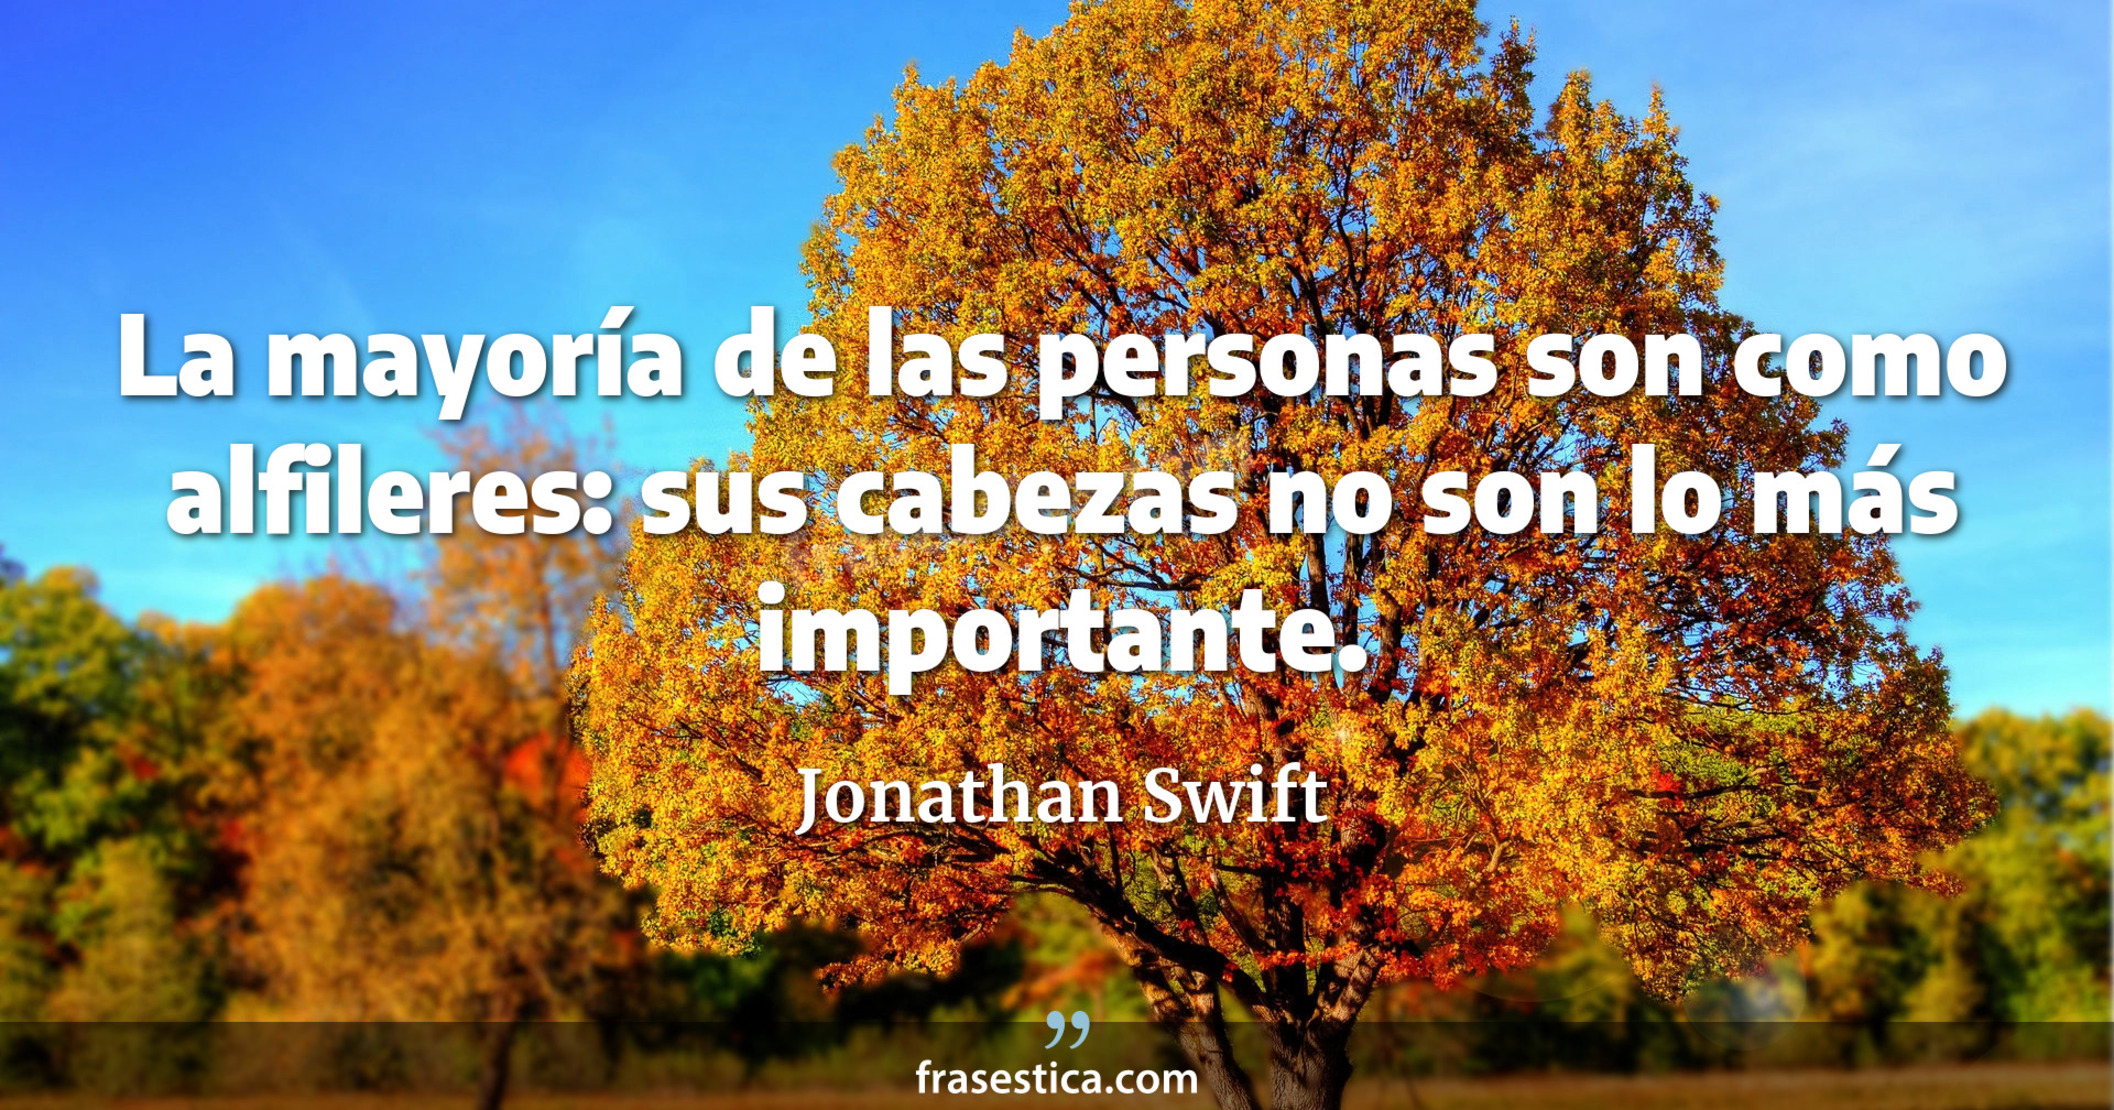 La mayoría de las personas son como alfileres: sus cabezas no son lo más importante. - Jonathan Swift